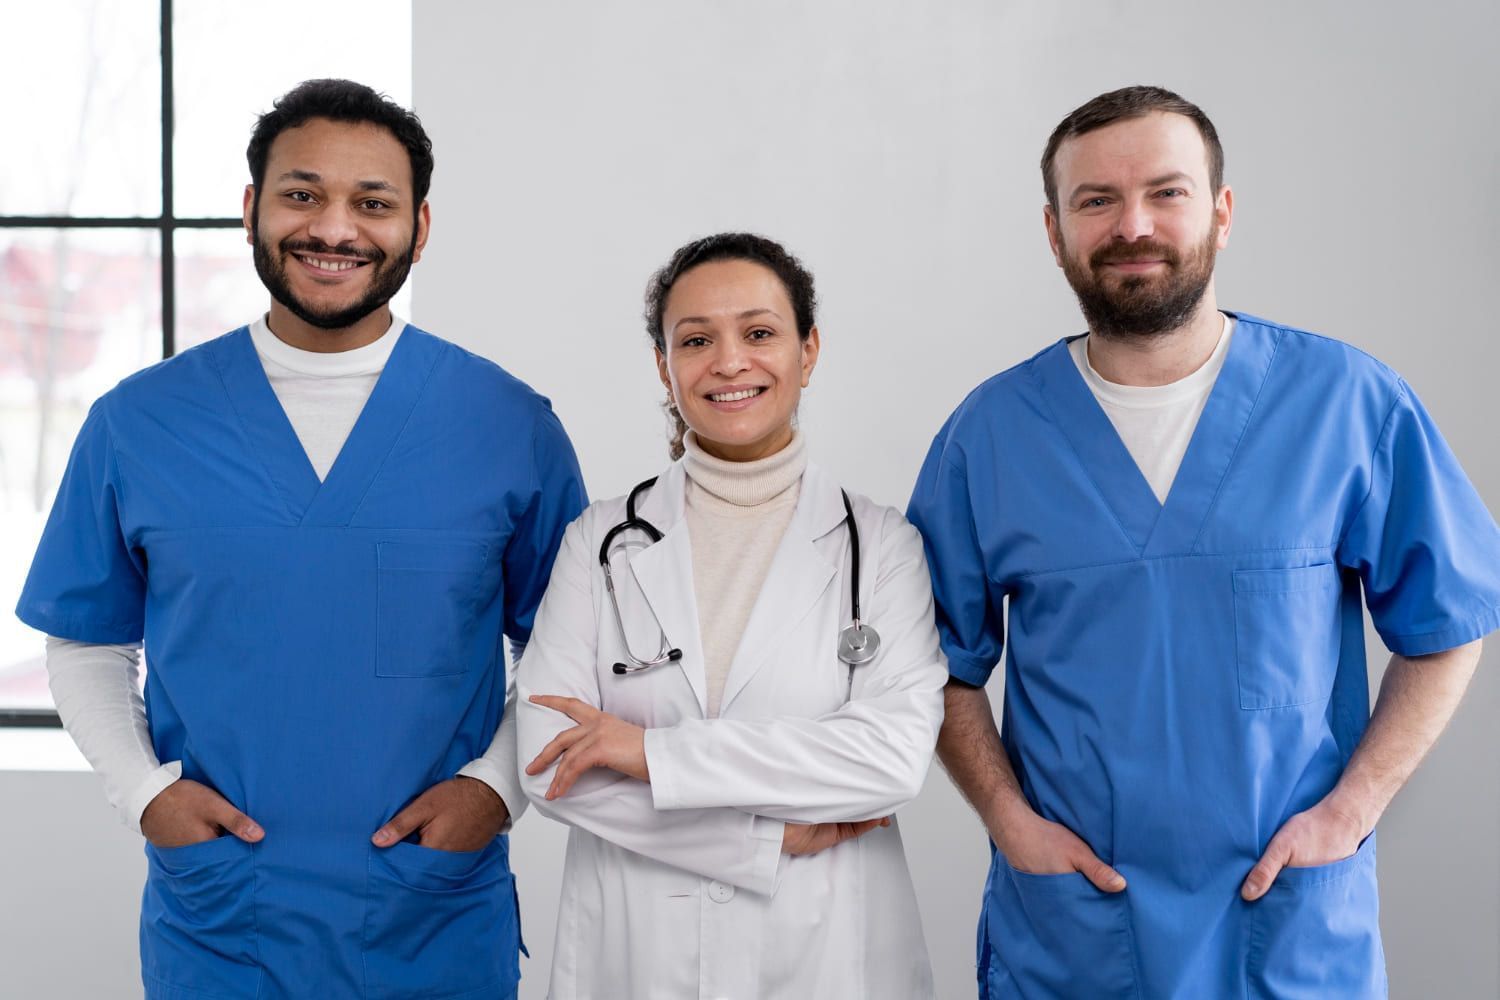 Médica e enfermeiros prontos para o trabalho; a área da saúde é uma das melhores do mercado para conseguir emprego